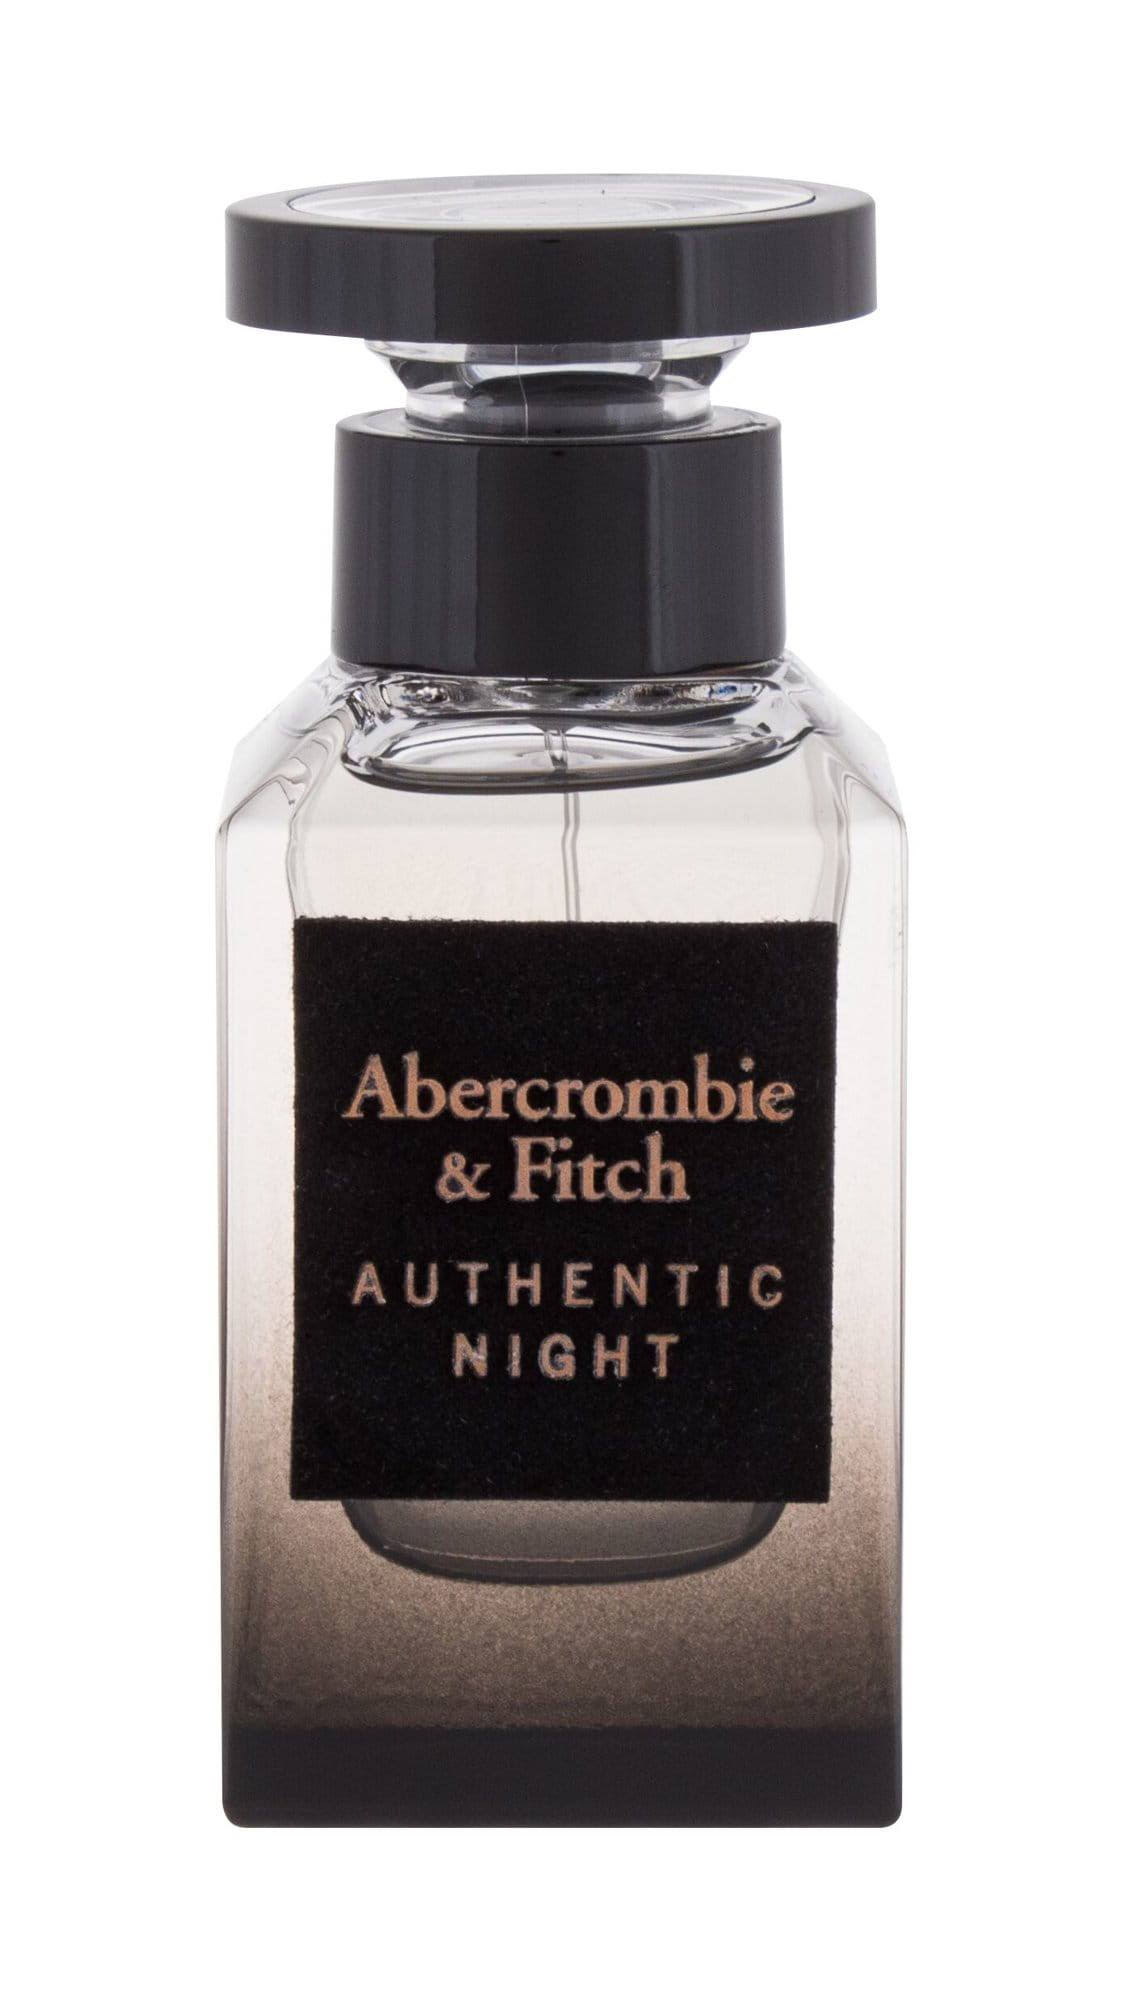 Abercrombie & Fitch Authentic Night Eau de Toilette 50ml Spray